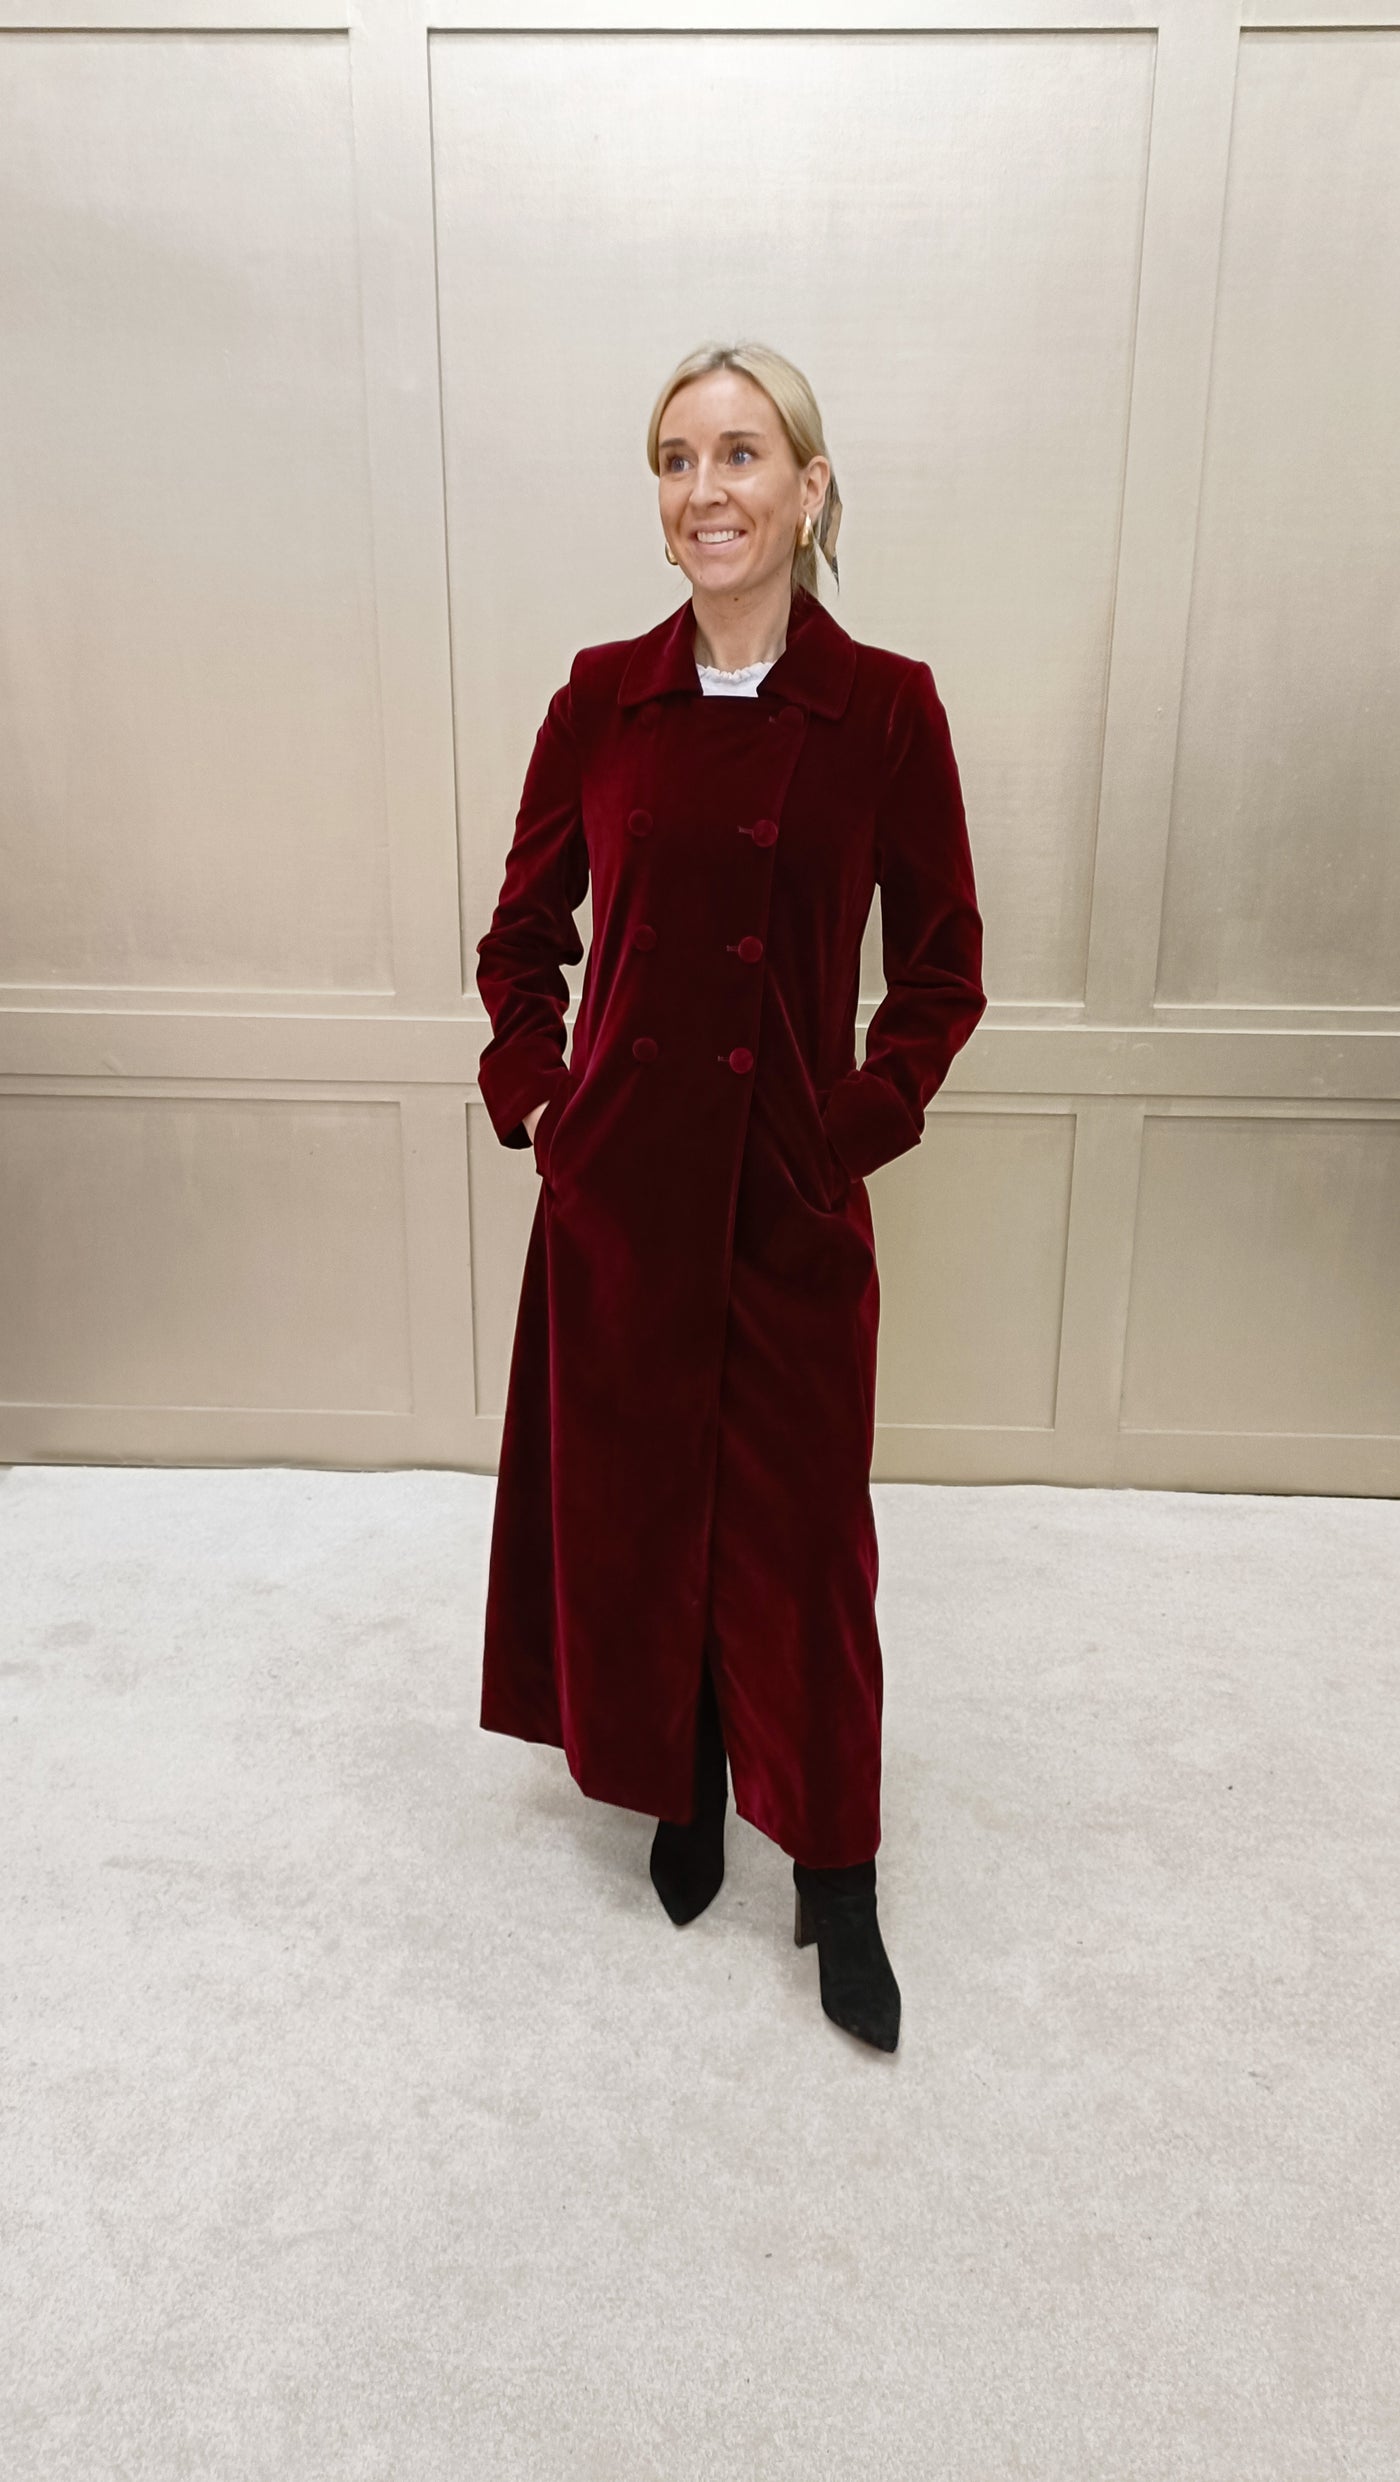 Delphi Long Red Velvet Coat - Boho Glamour - 50% OFF